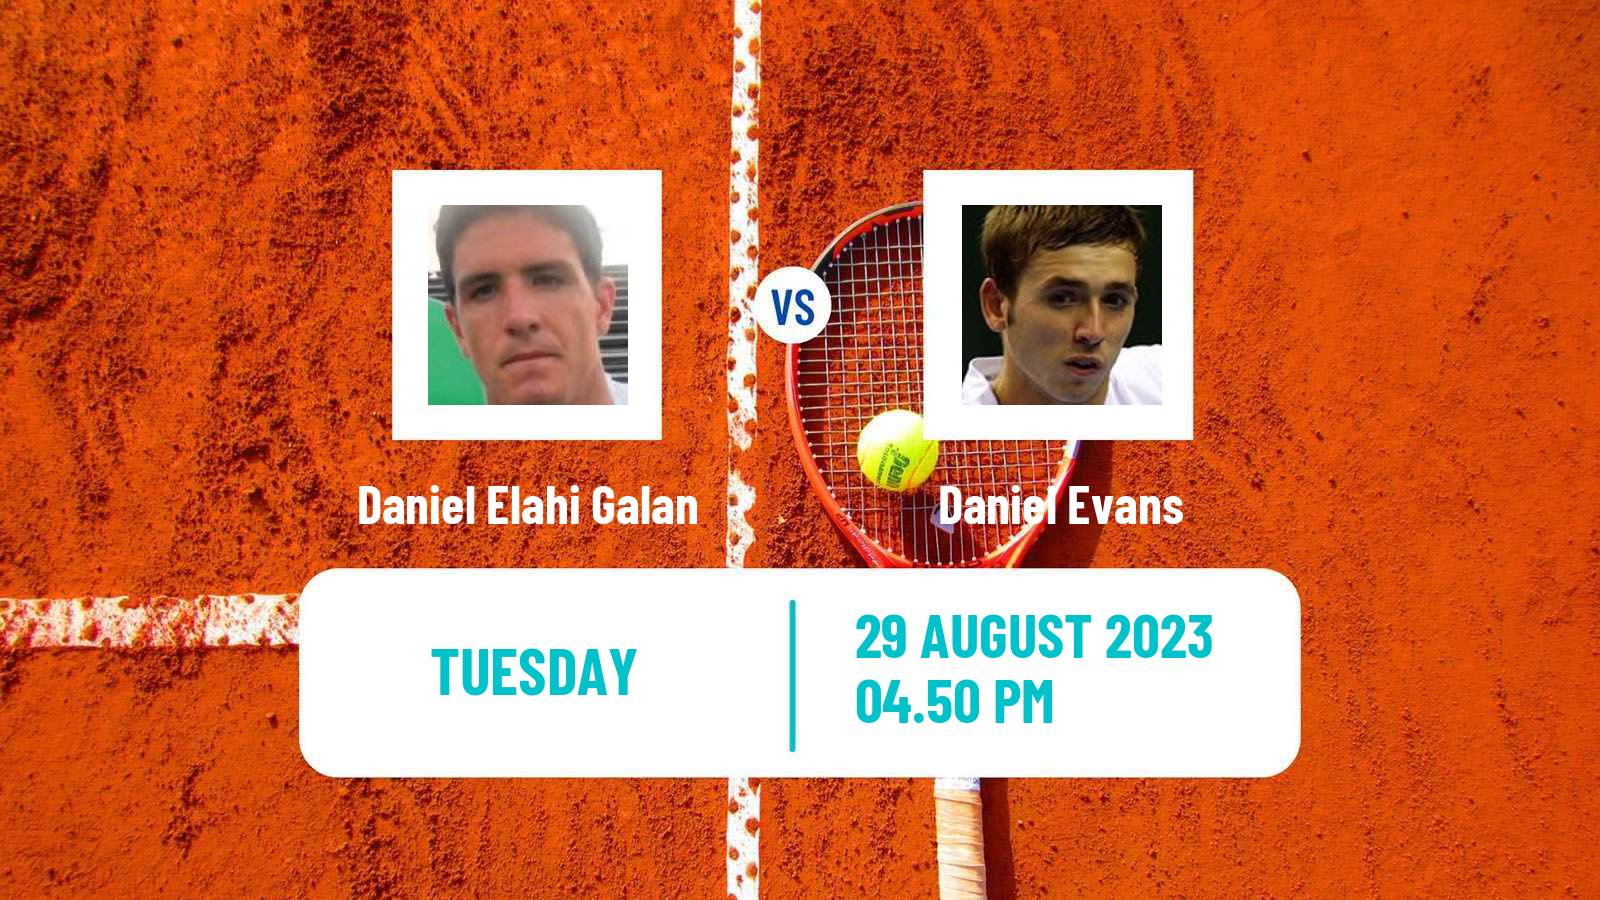 Tennis ATP US Open Daniel Elahi Galan - Daniel Evans